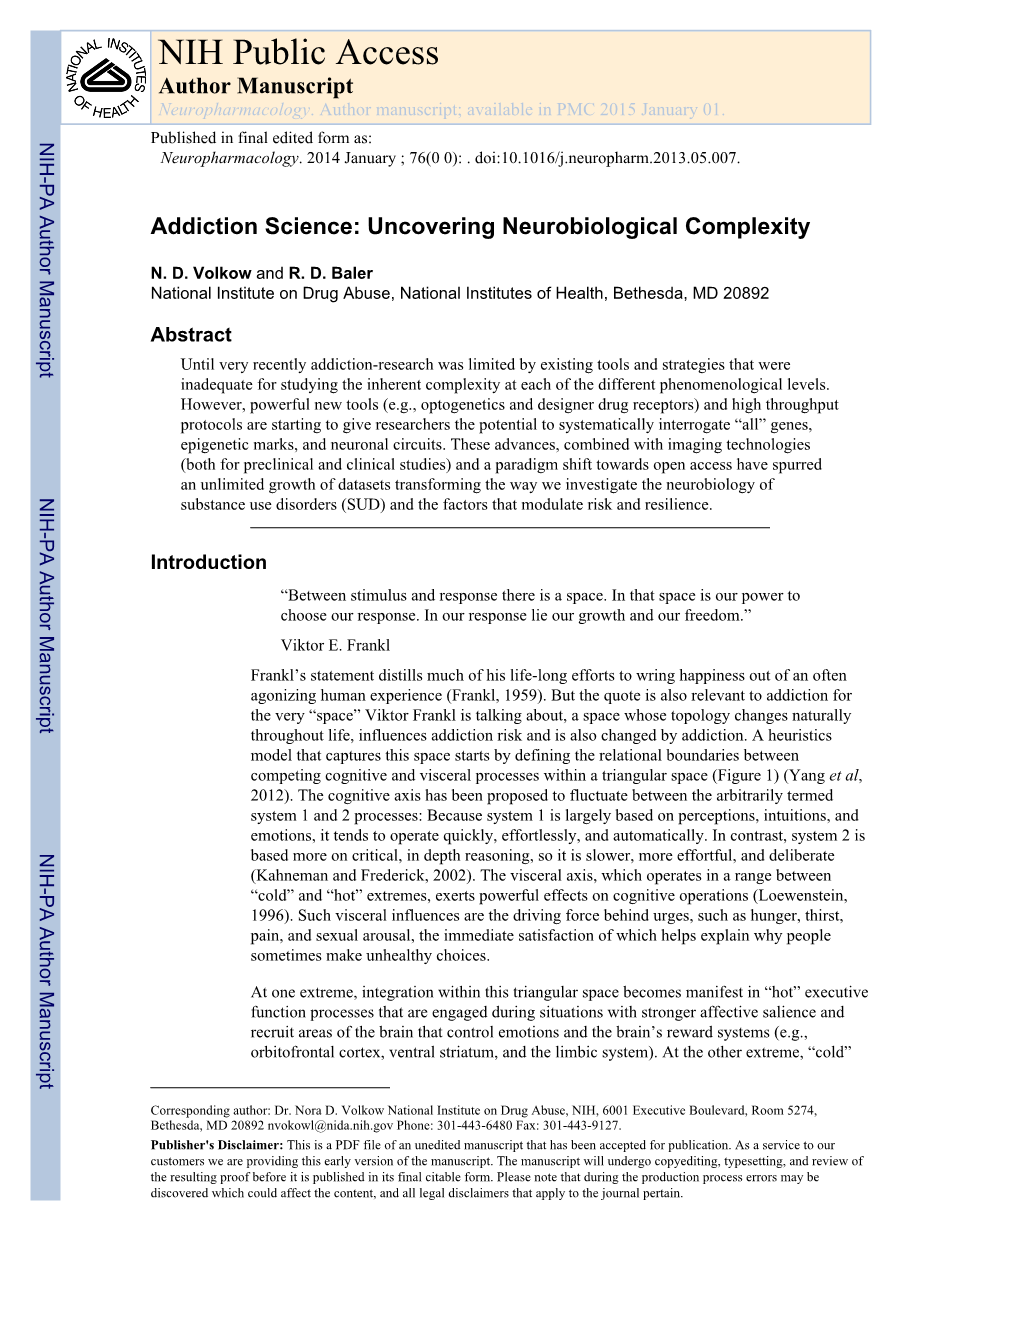 NIH Public Access Author Manuscript Neuropharmacology